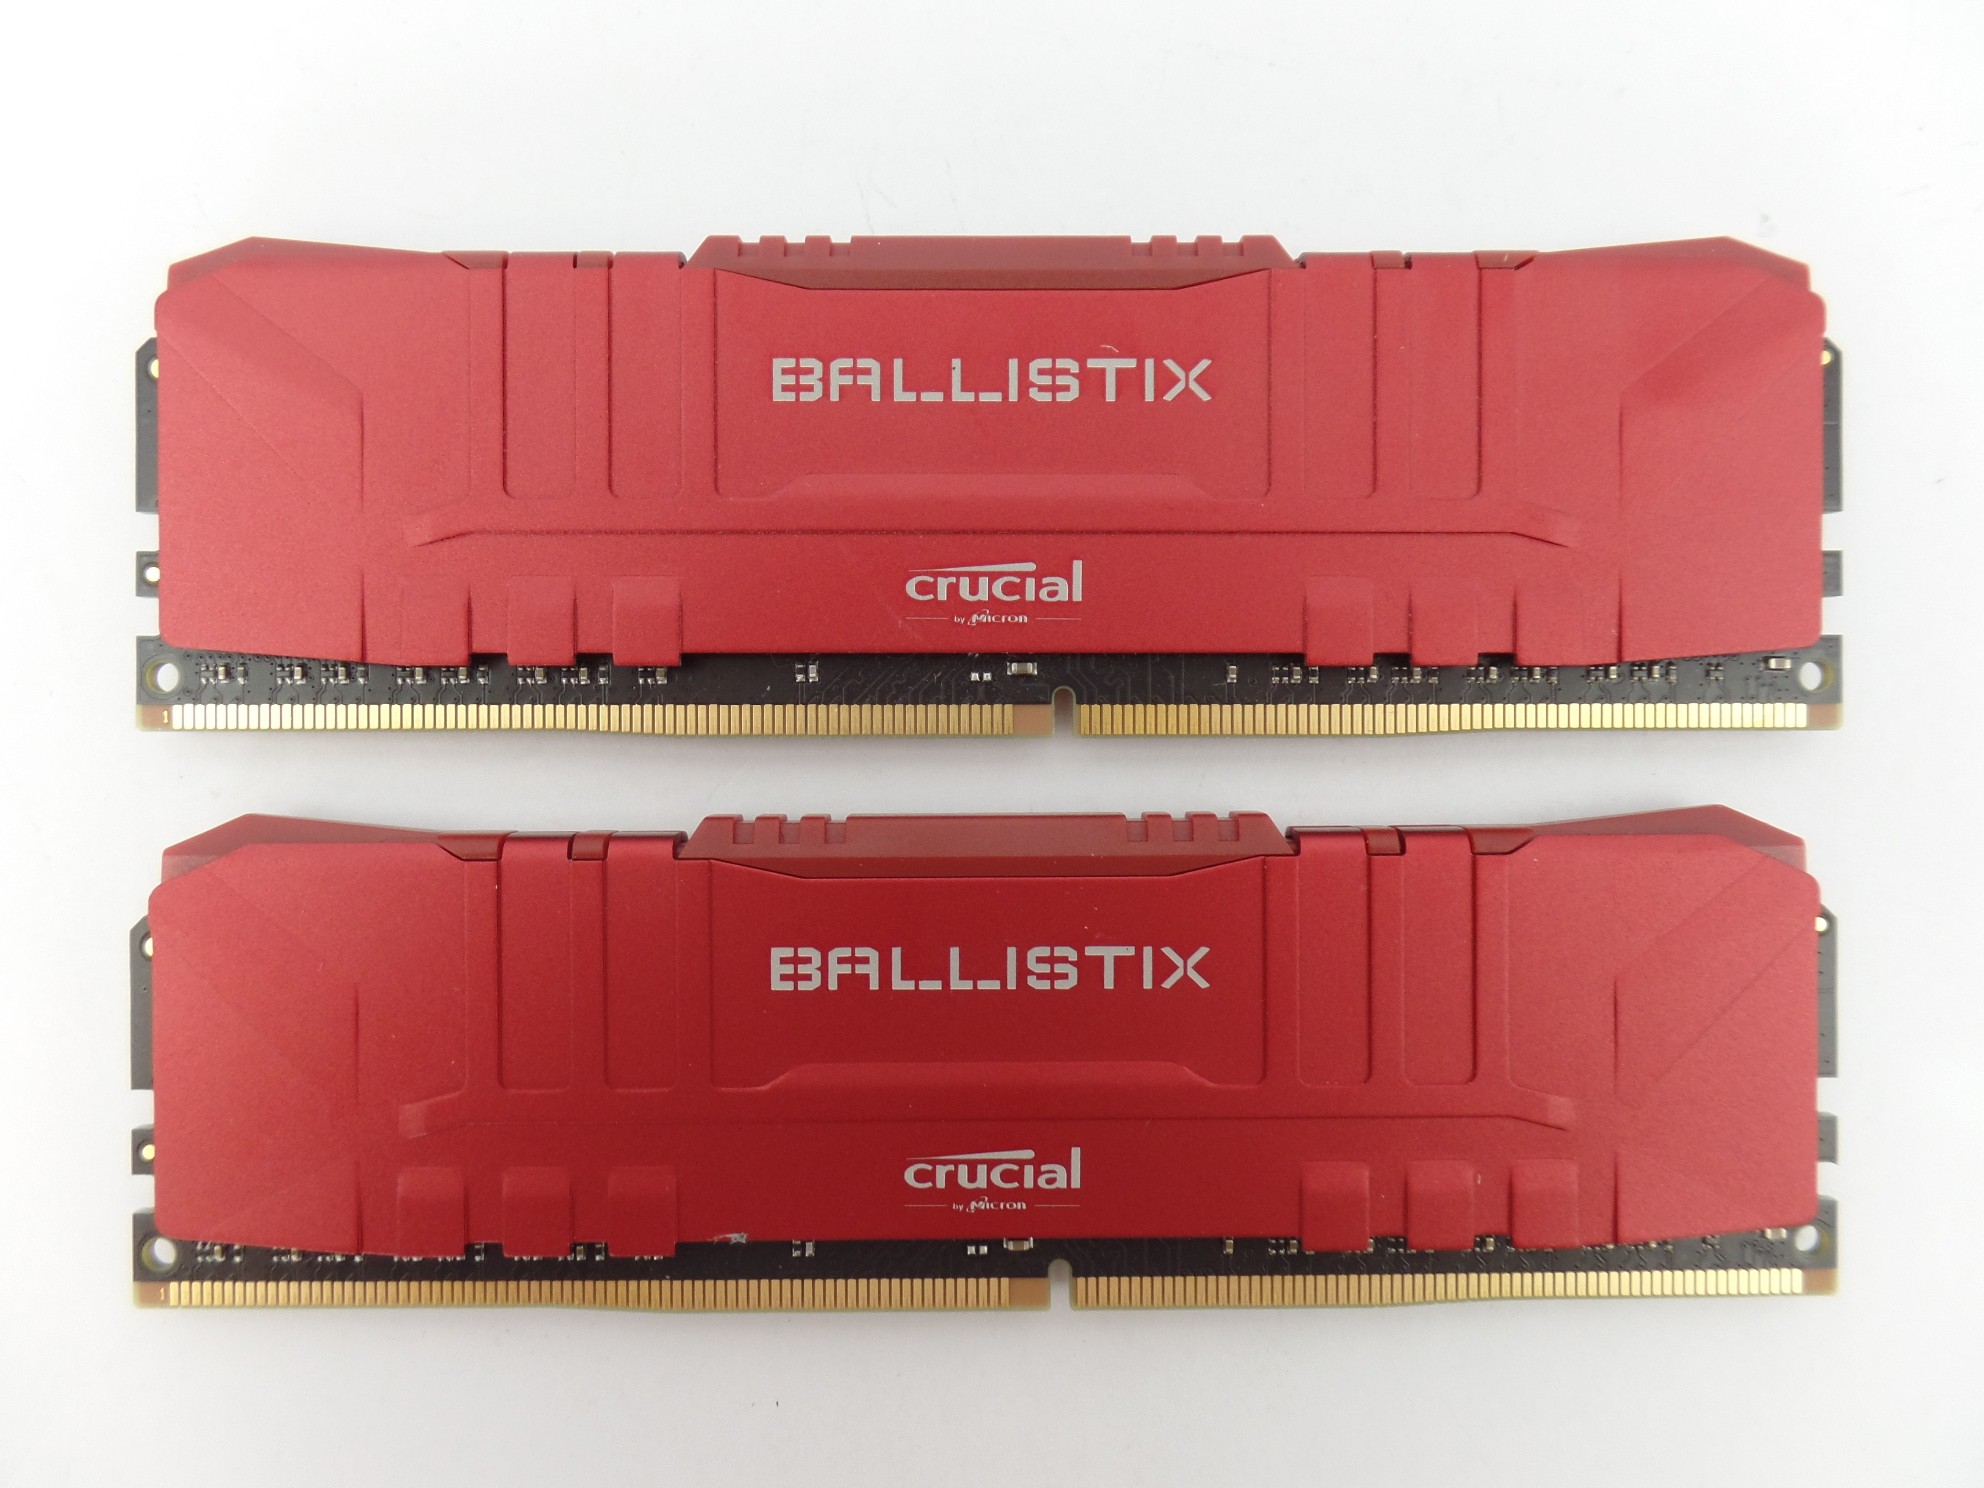 Crucial Billistix 8GB x2 DDR4-3000 BL8G30C15U4R.M8FE1 SODIMM RAM Desktop Memory